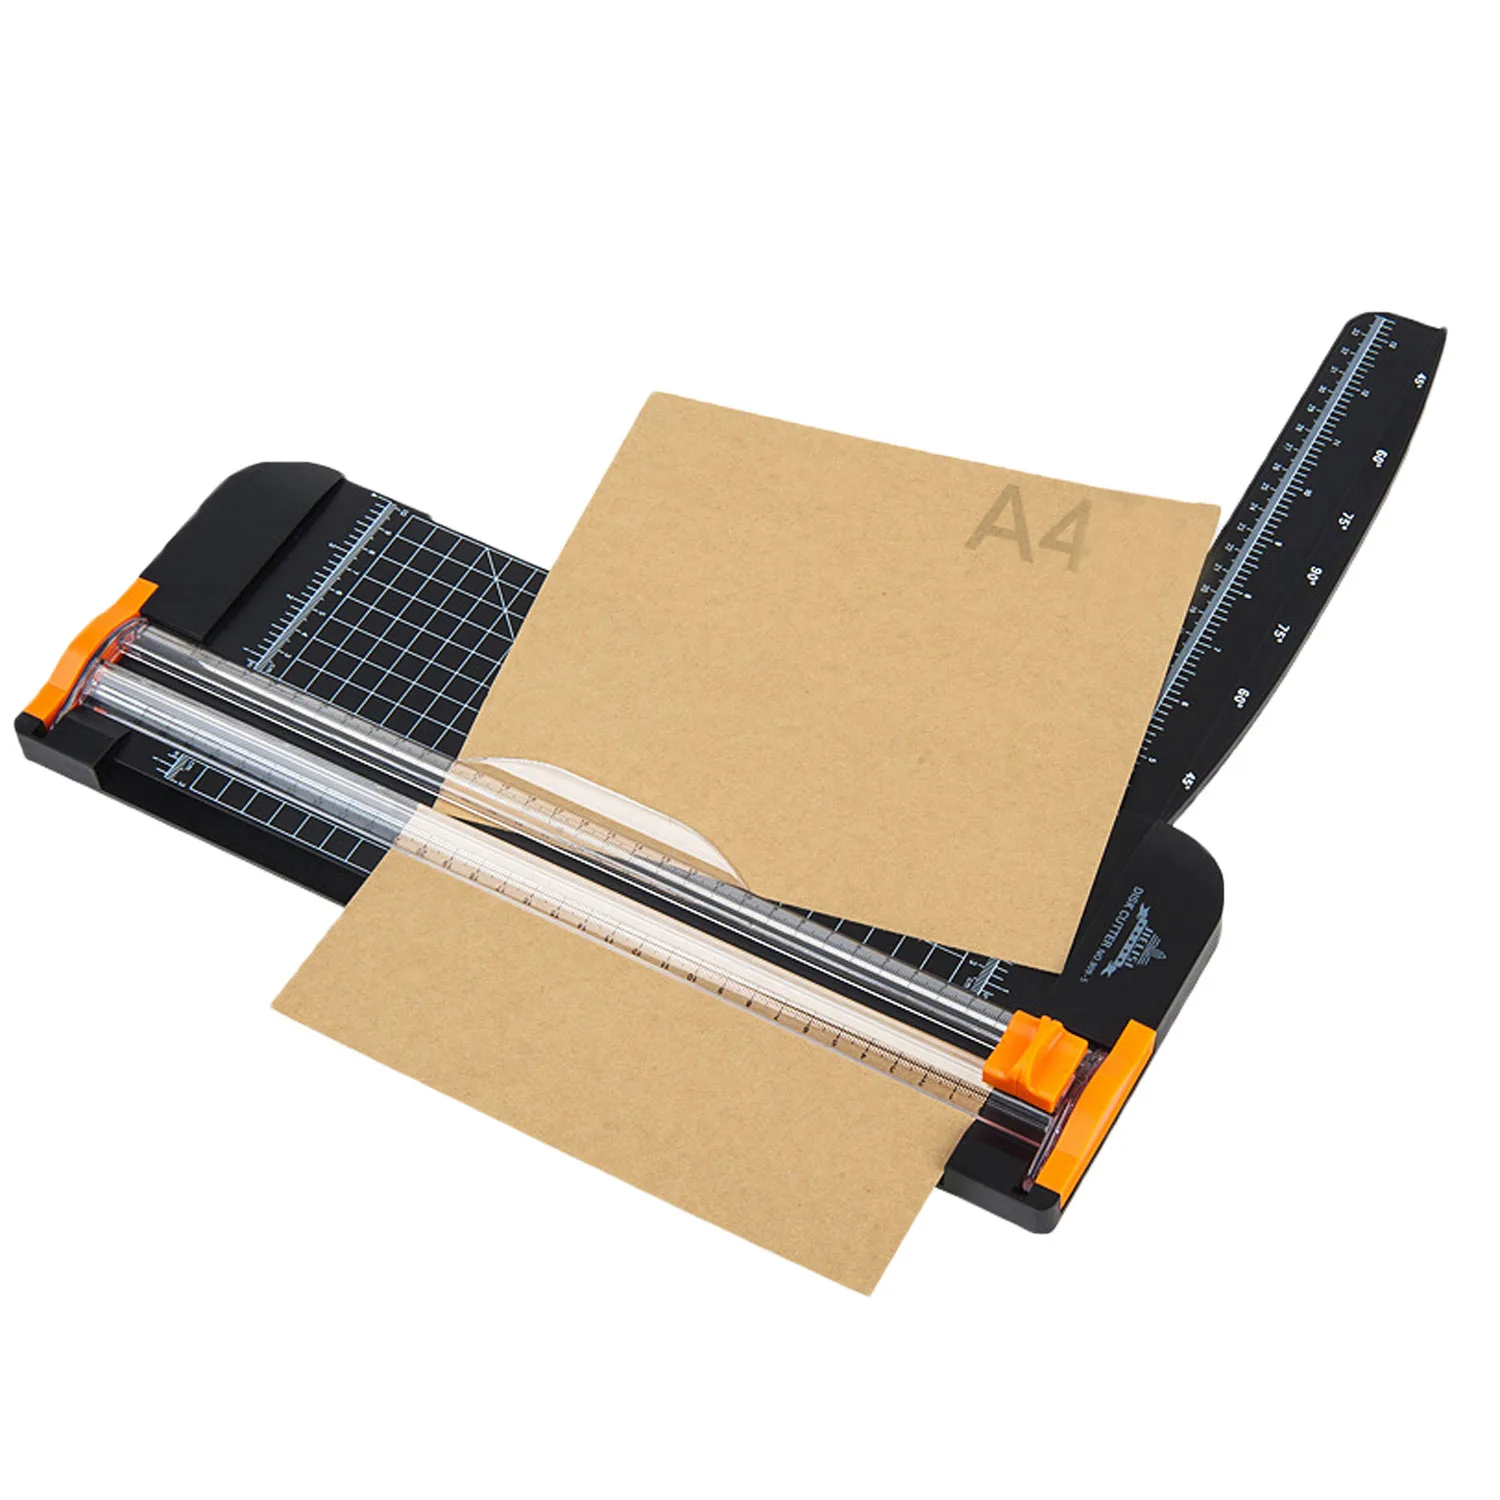 A4 триммер для бумаги гильотина для резки бумаги с безопасности защиты гильотина сбоку линейка для Стандартный резки Бумага этикетки с фото